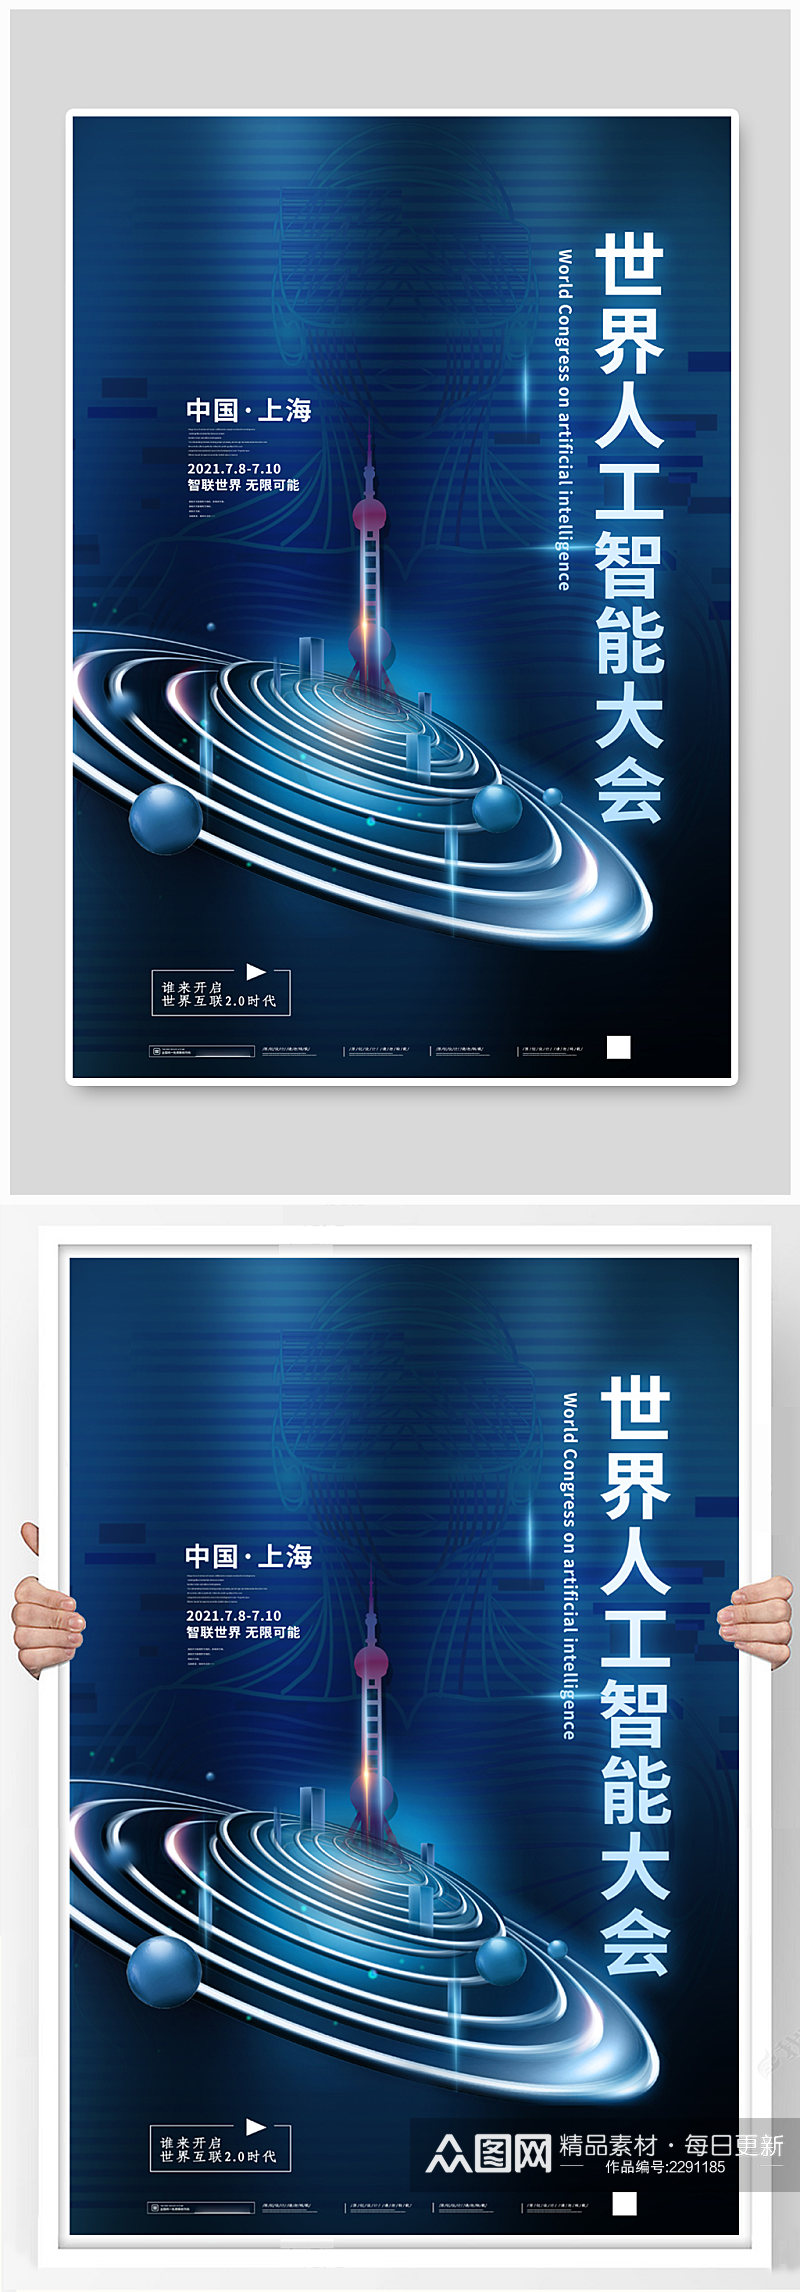 世界人工智能大会东方明珠蓝色科技风海报素材